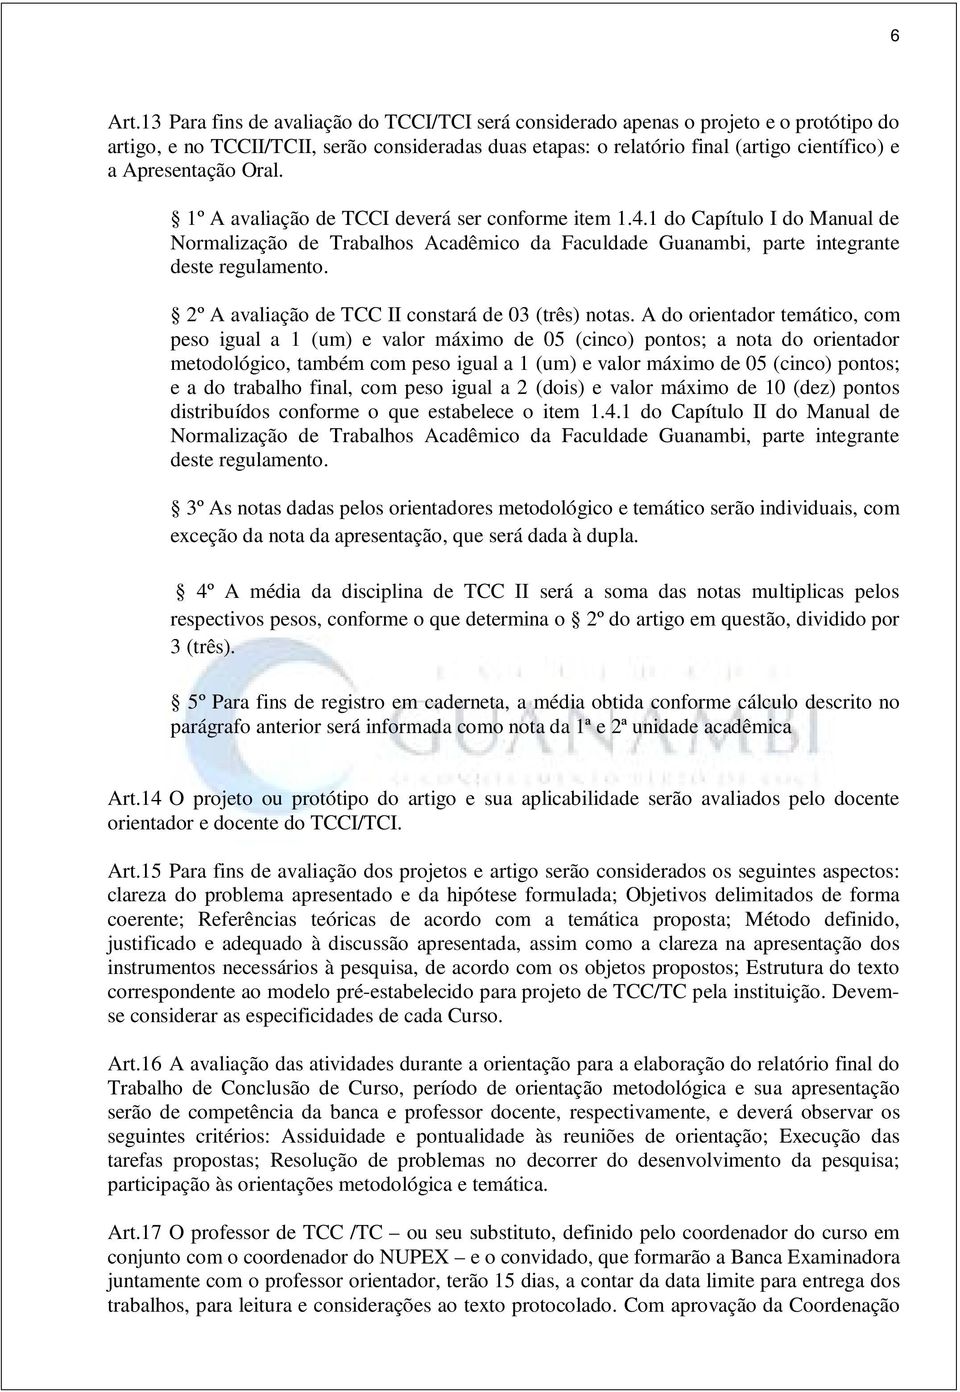 Apresentação Oral. 1º A avaliação de TCCI deverá ser conforme item 1.4.1 do Capítulo I do Manual de Normalização de Trabalhos Acadêmico da Faculdade Guanambi, parte integrante deste regulamento.